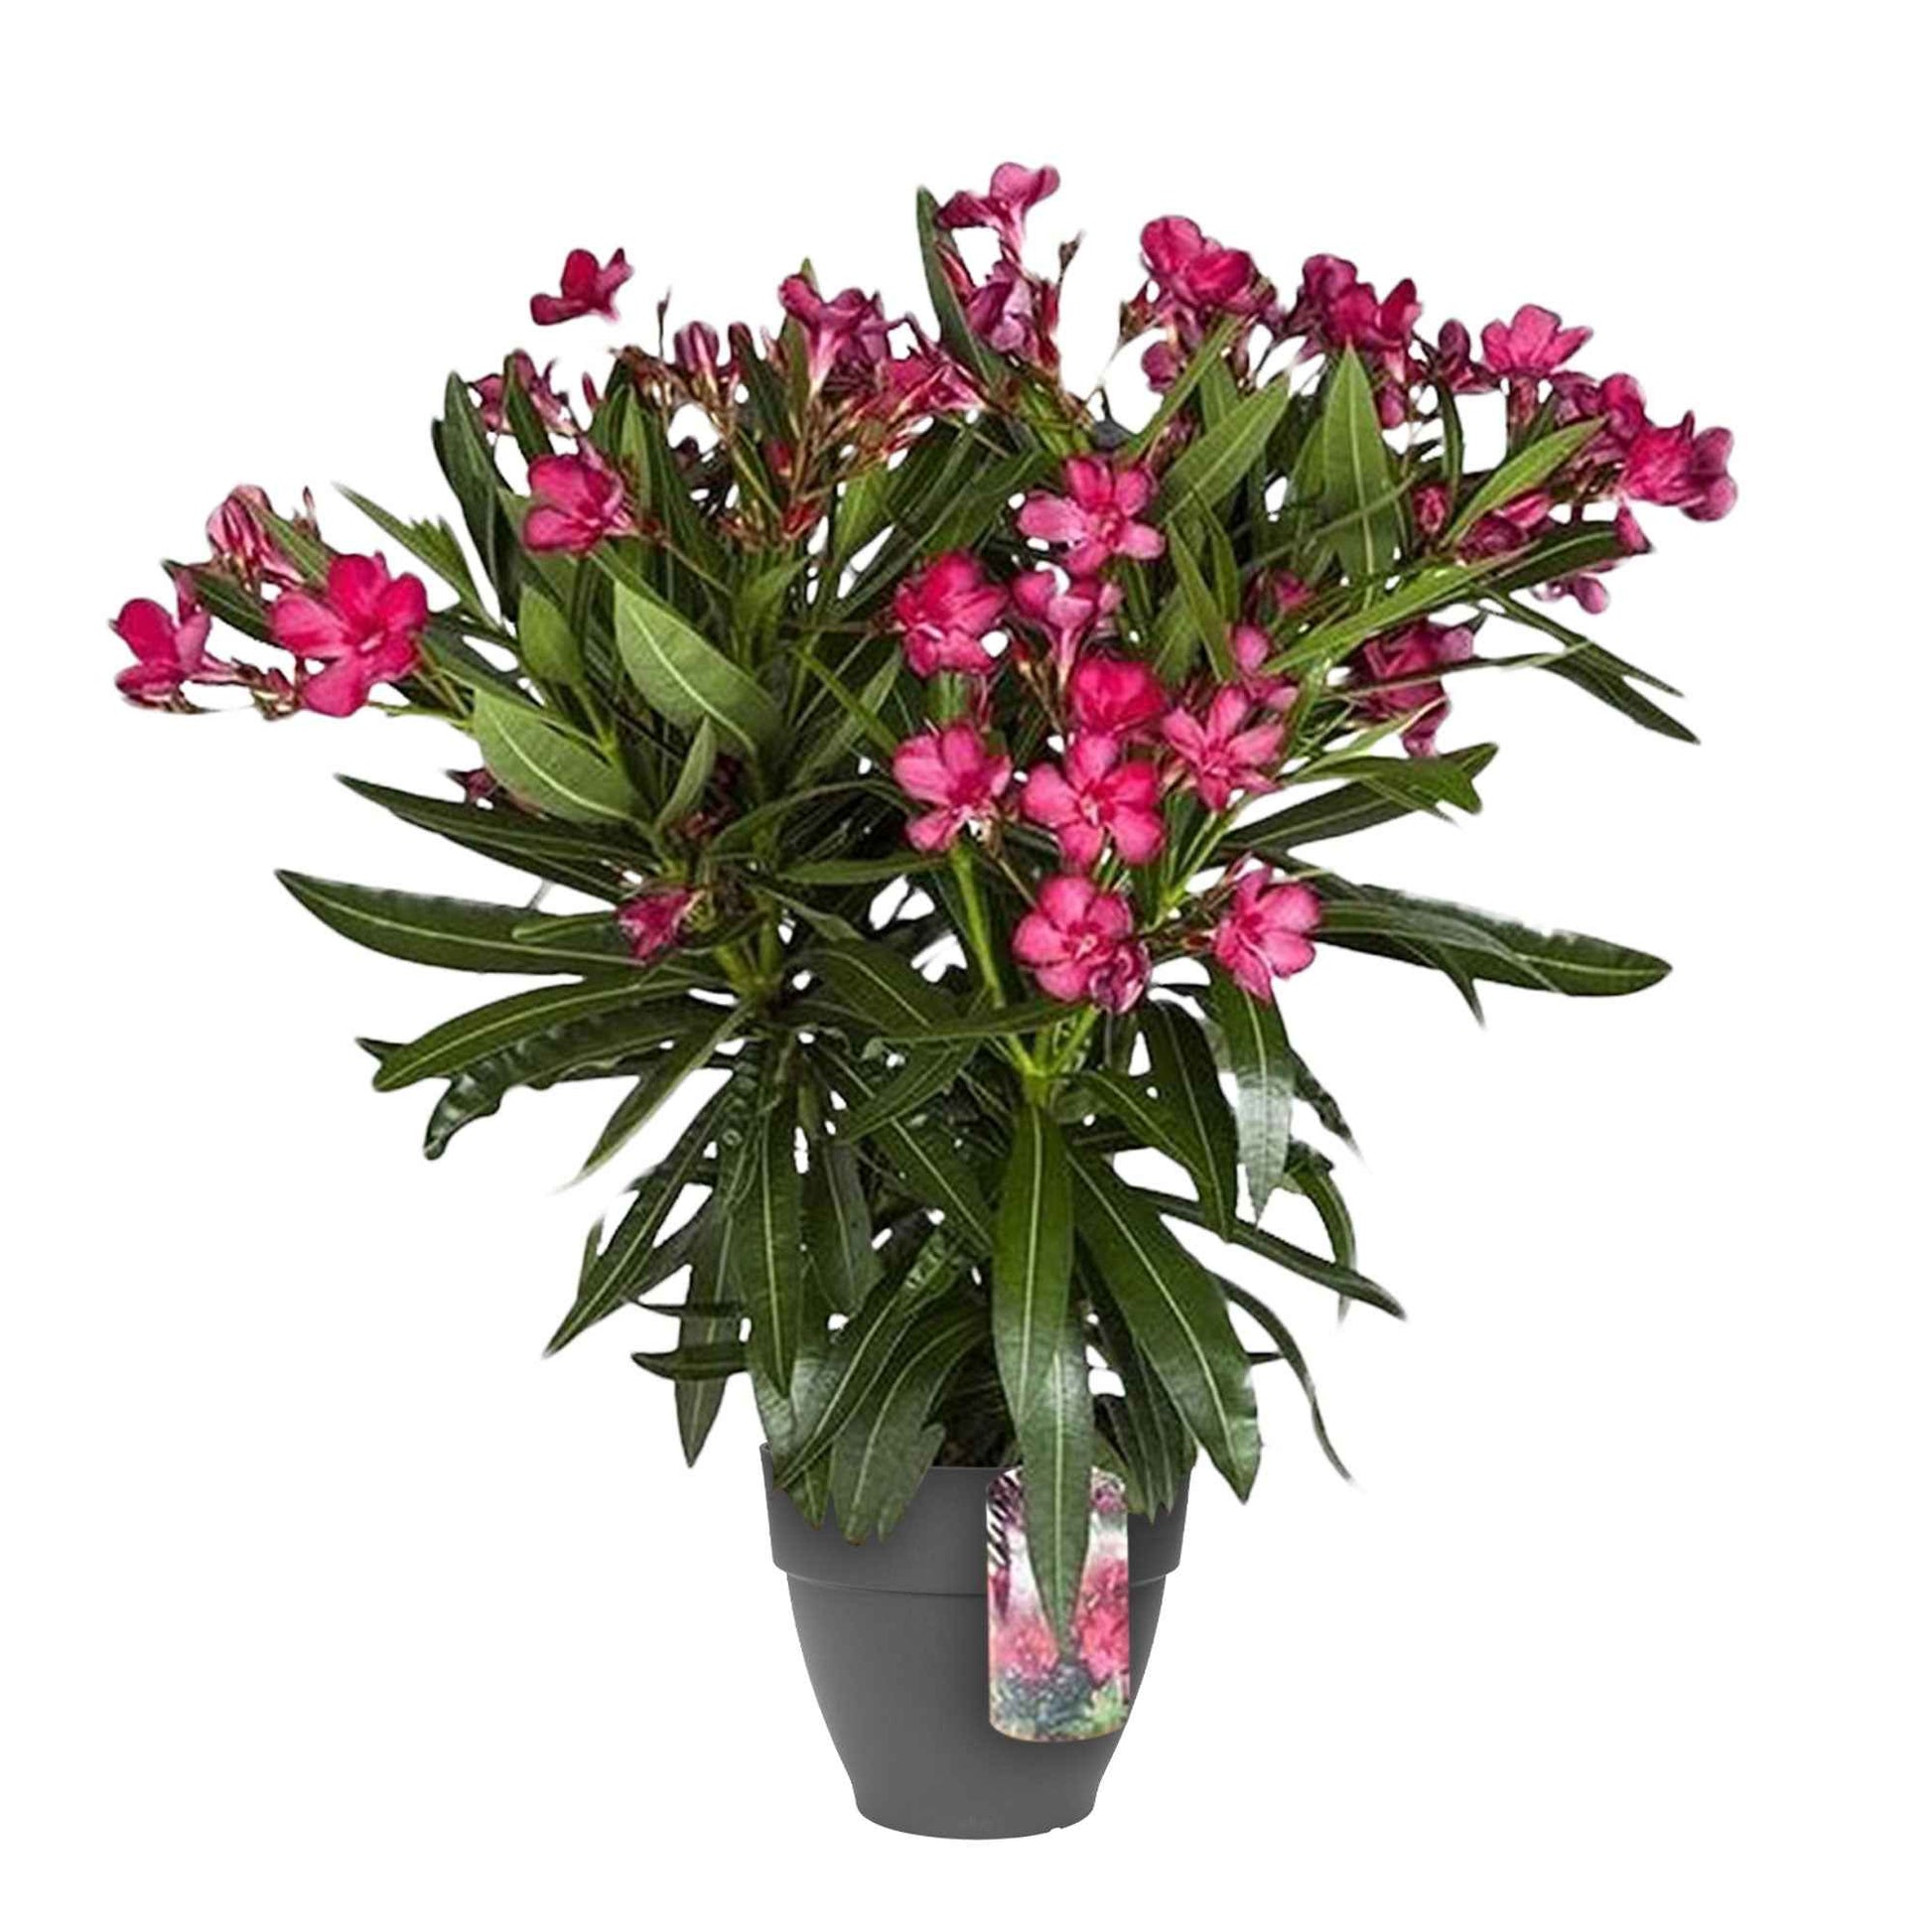 Nerium oleander rouge incl. Cache-pot Elho anthracite - Fleurs d'été